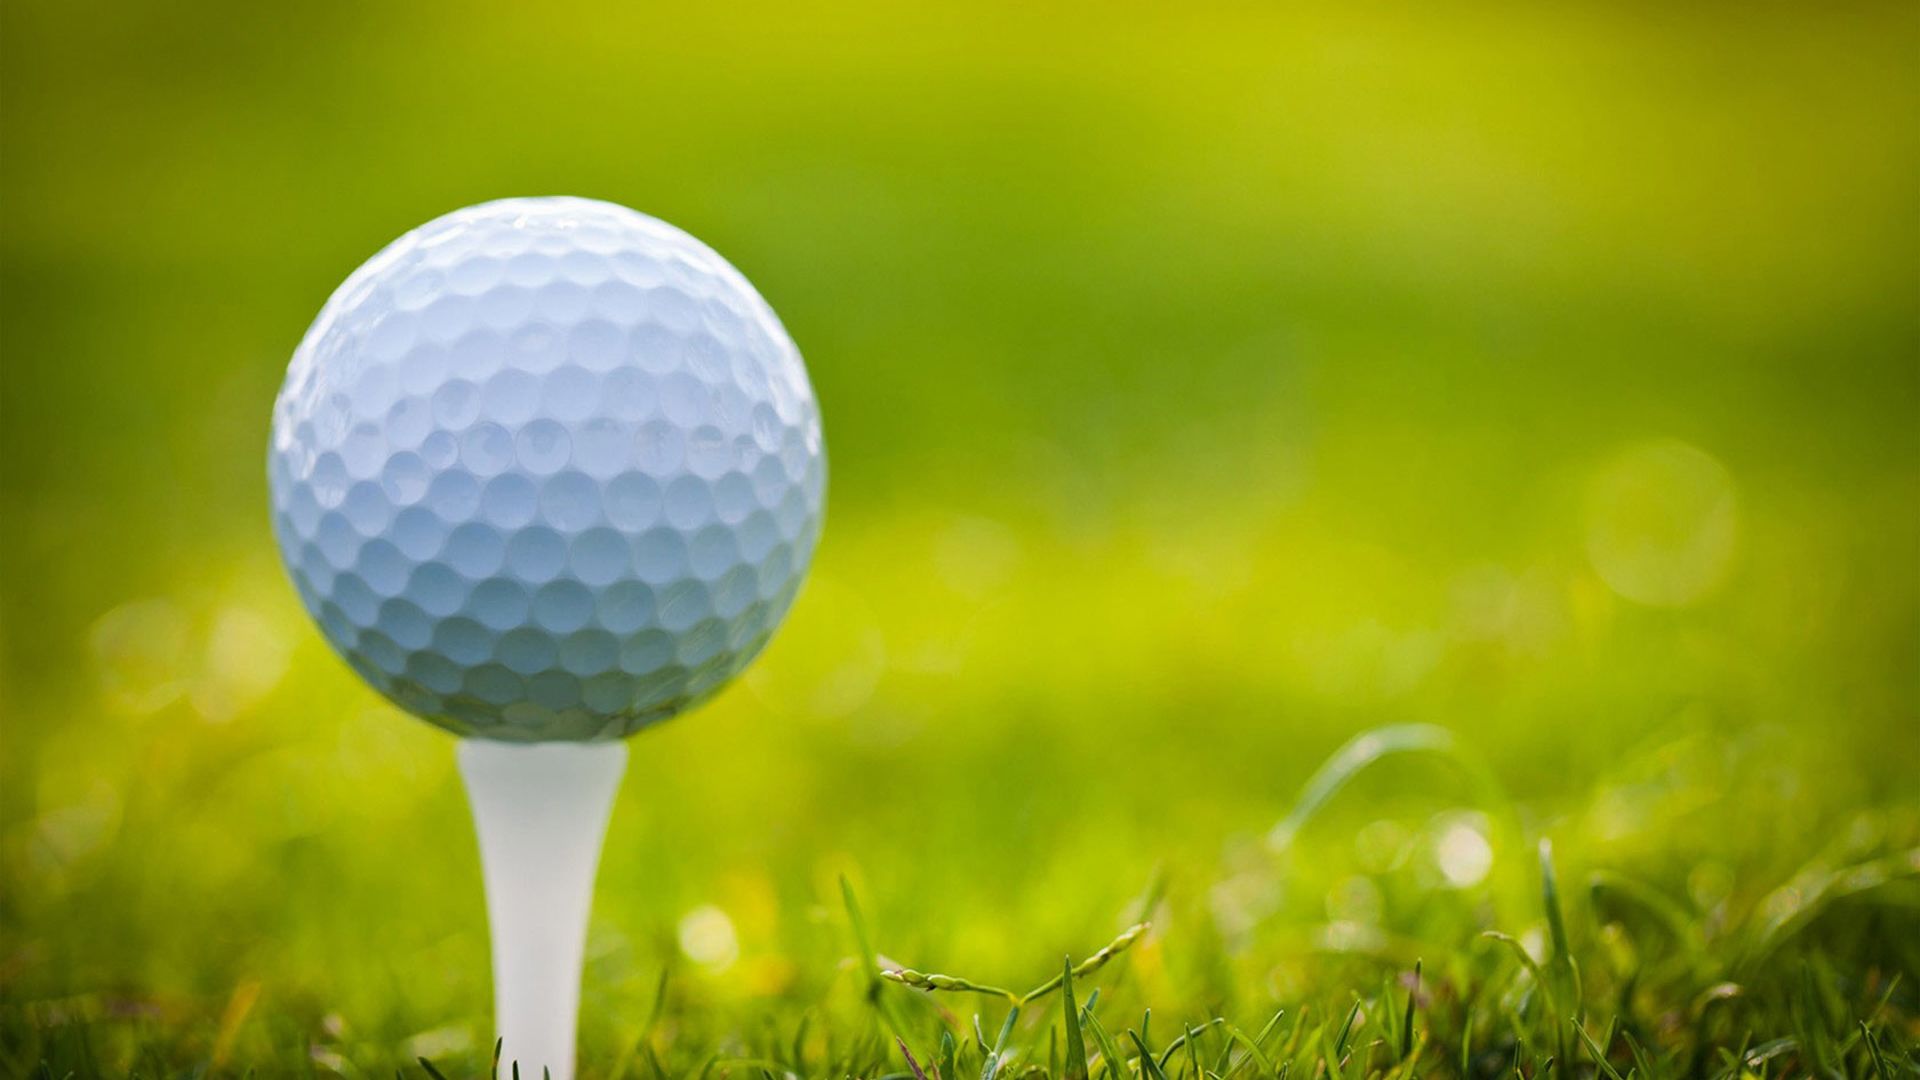 A Golf Ball On Grass